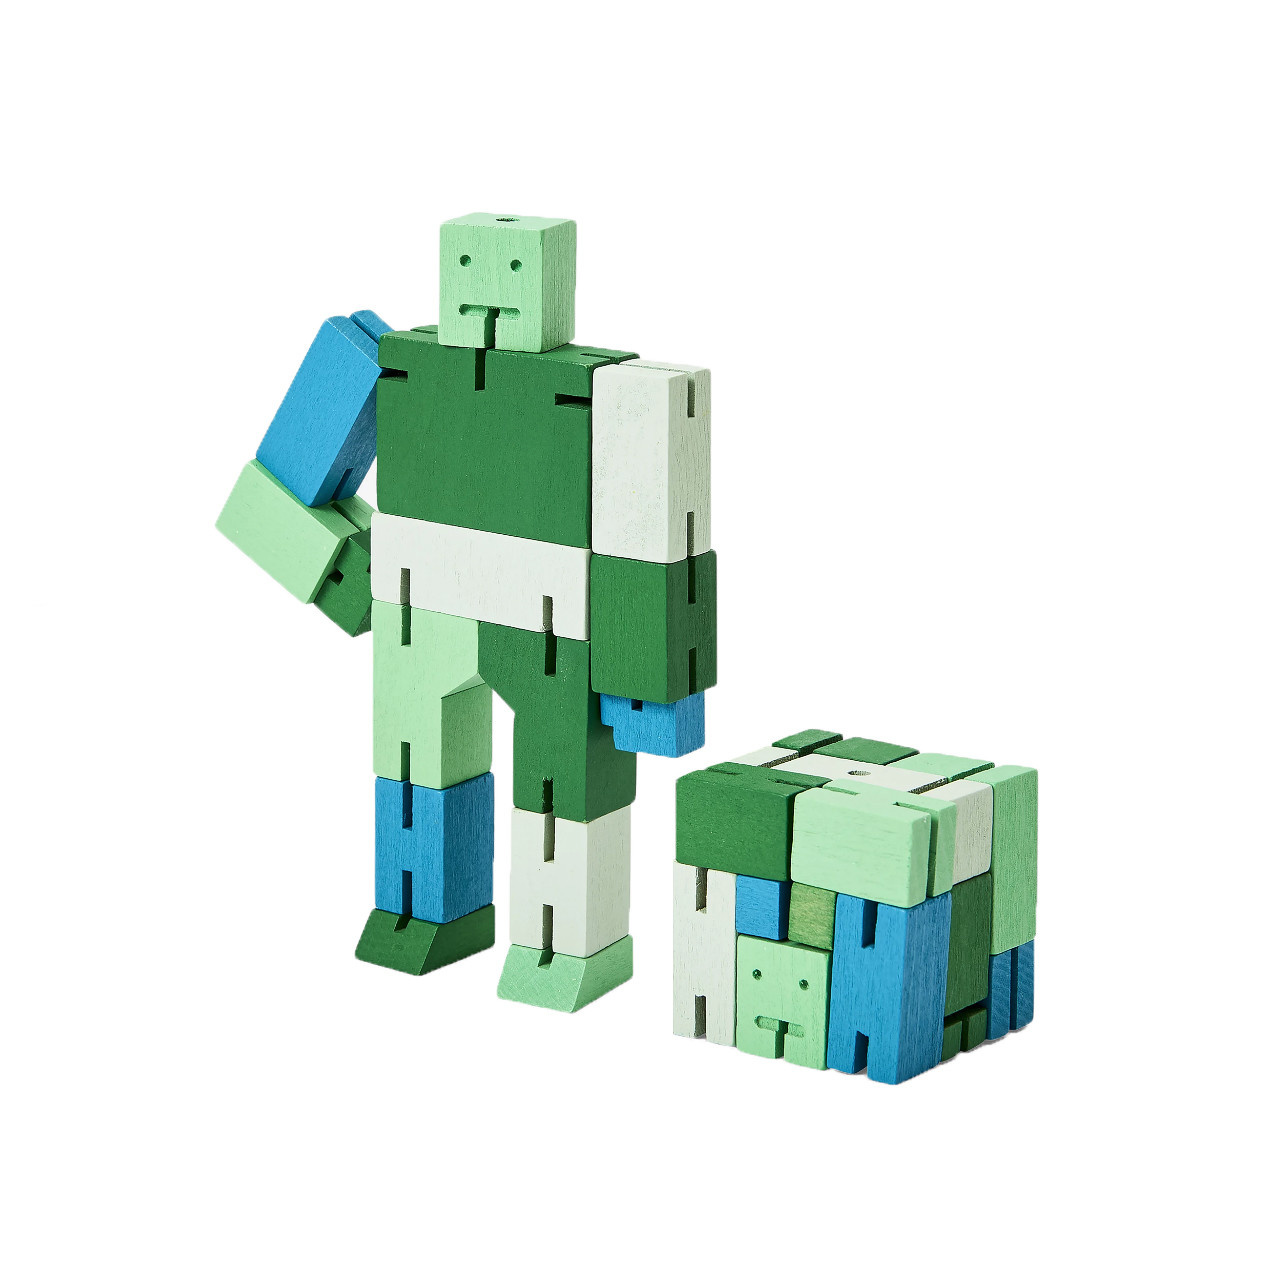 Cubebot Capsule Micro - Green